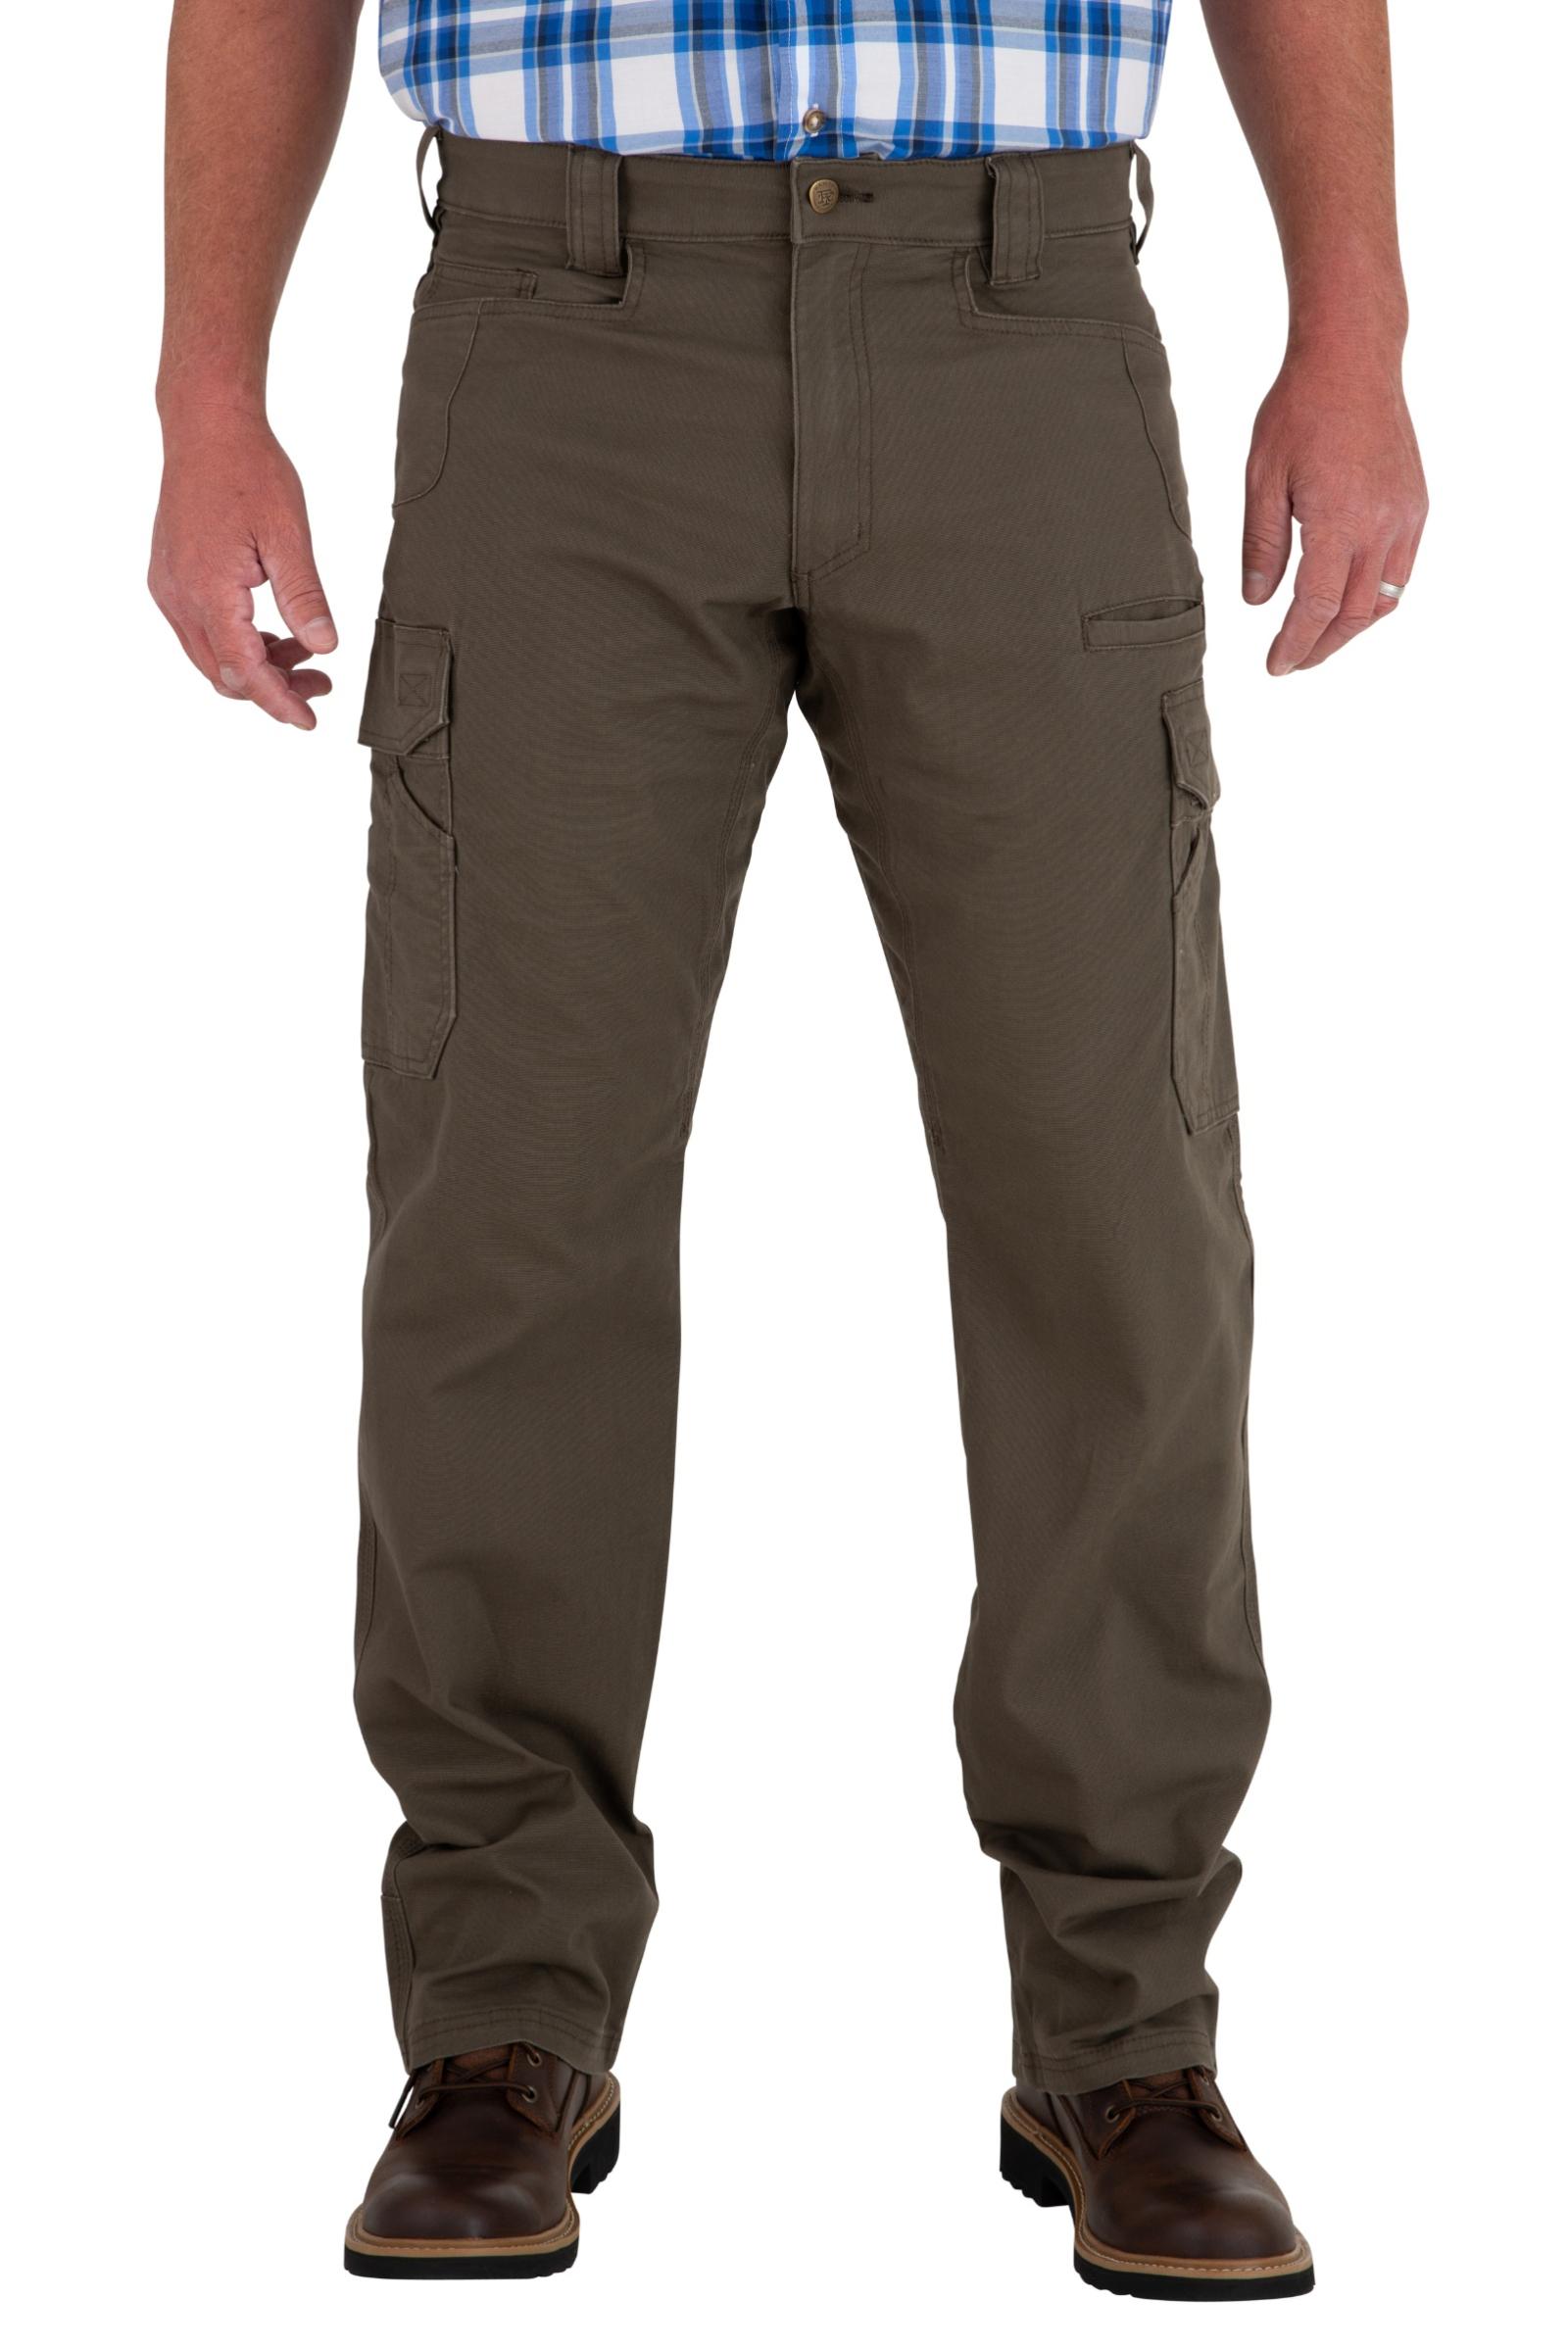 Noble Outfitters Men's Flex Canvas Cargo Pants